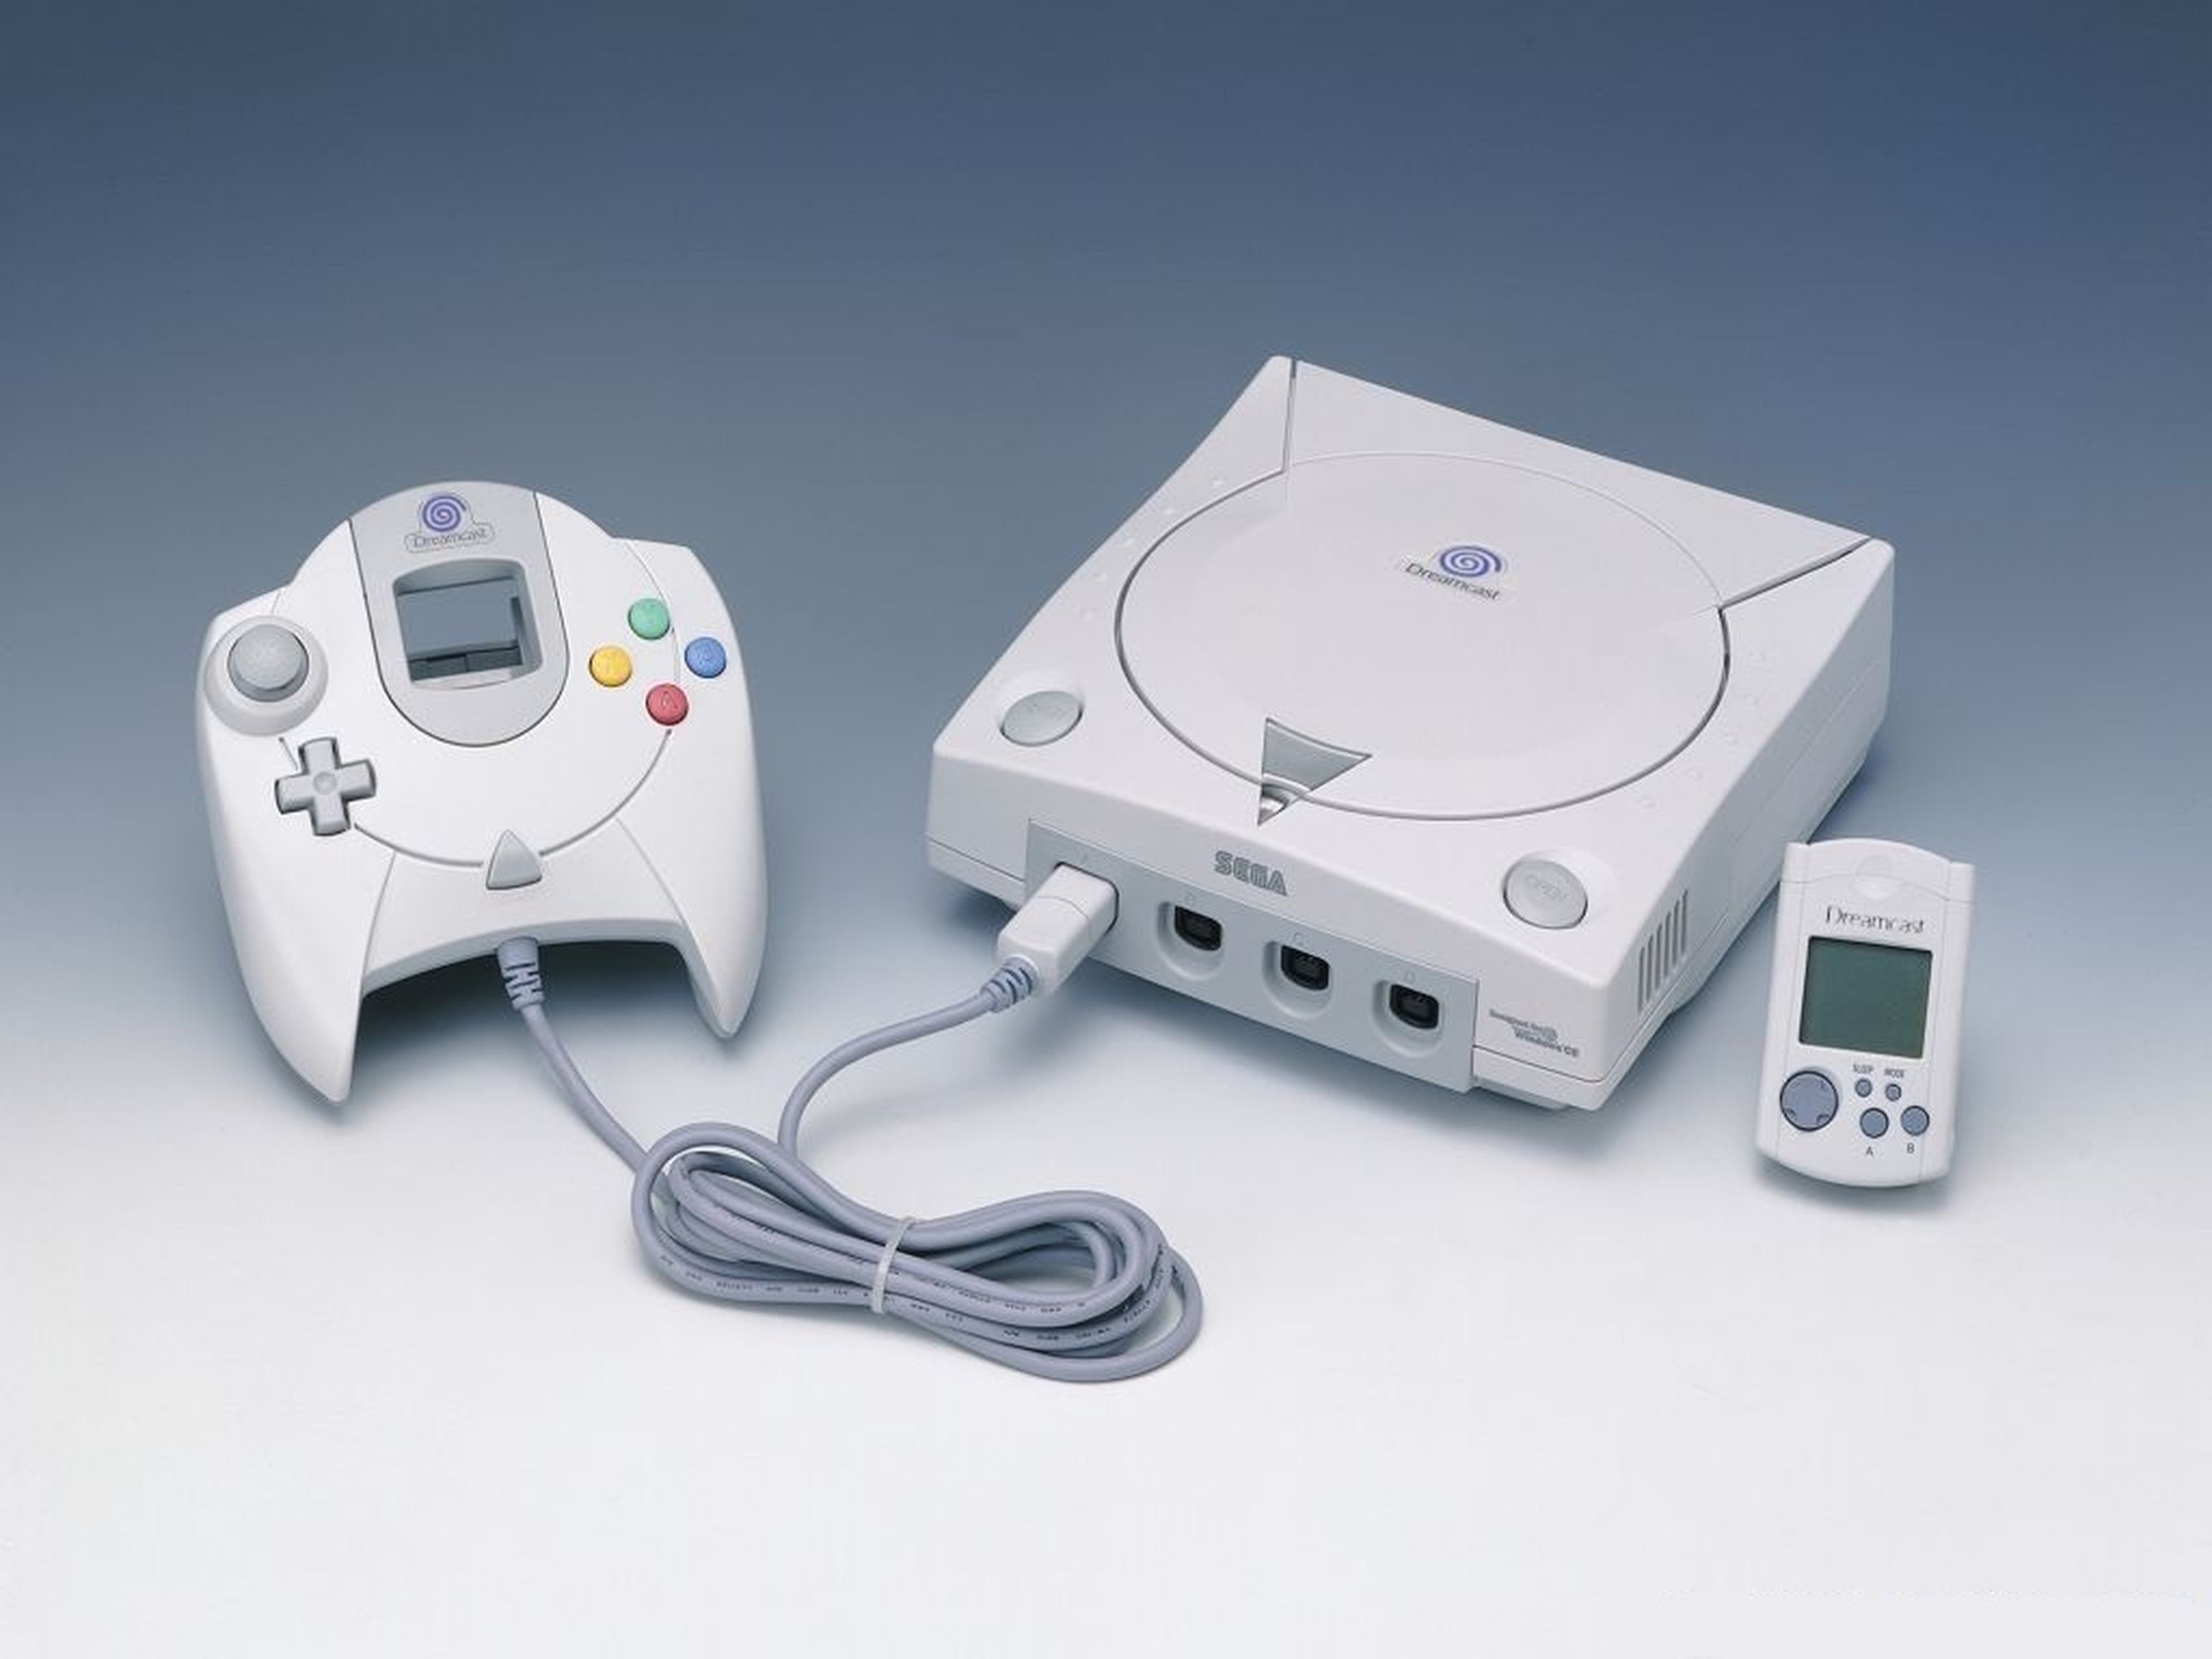 Los 20 mejores juegos de Dreamcast